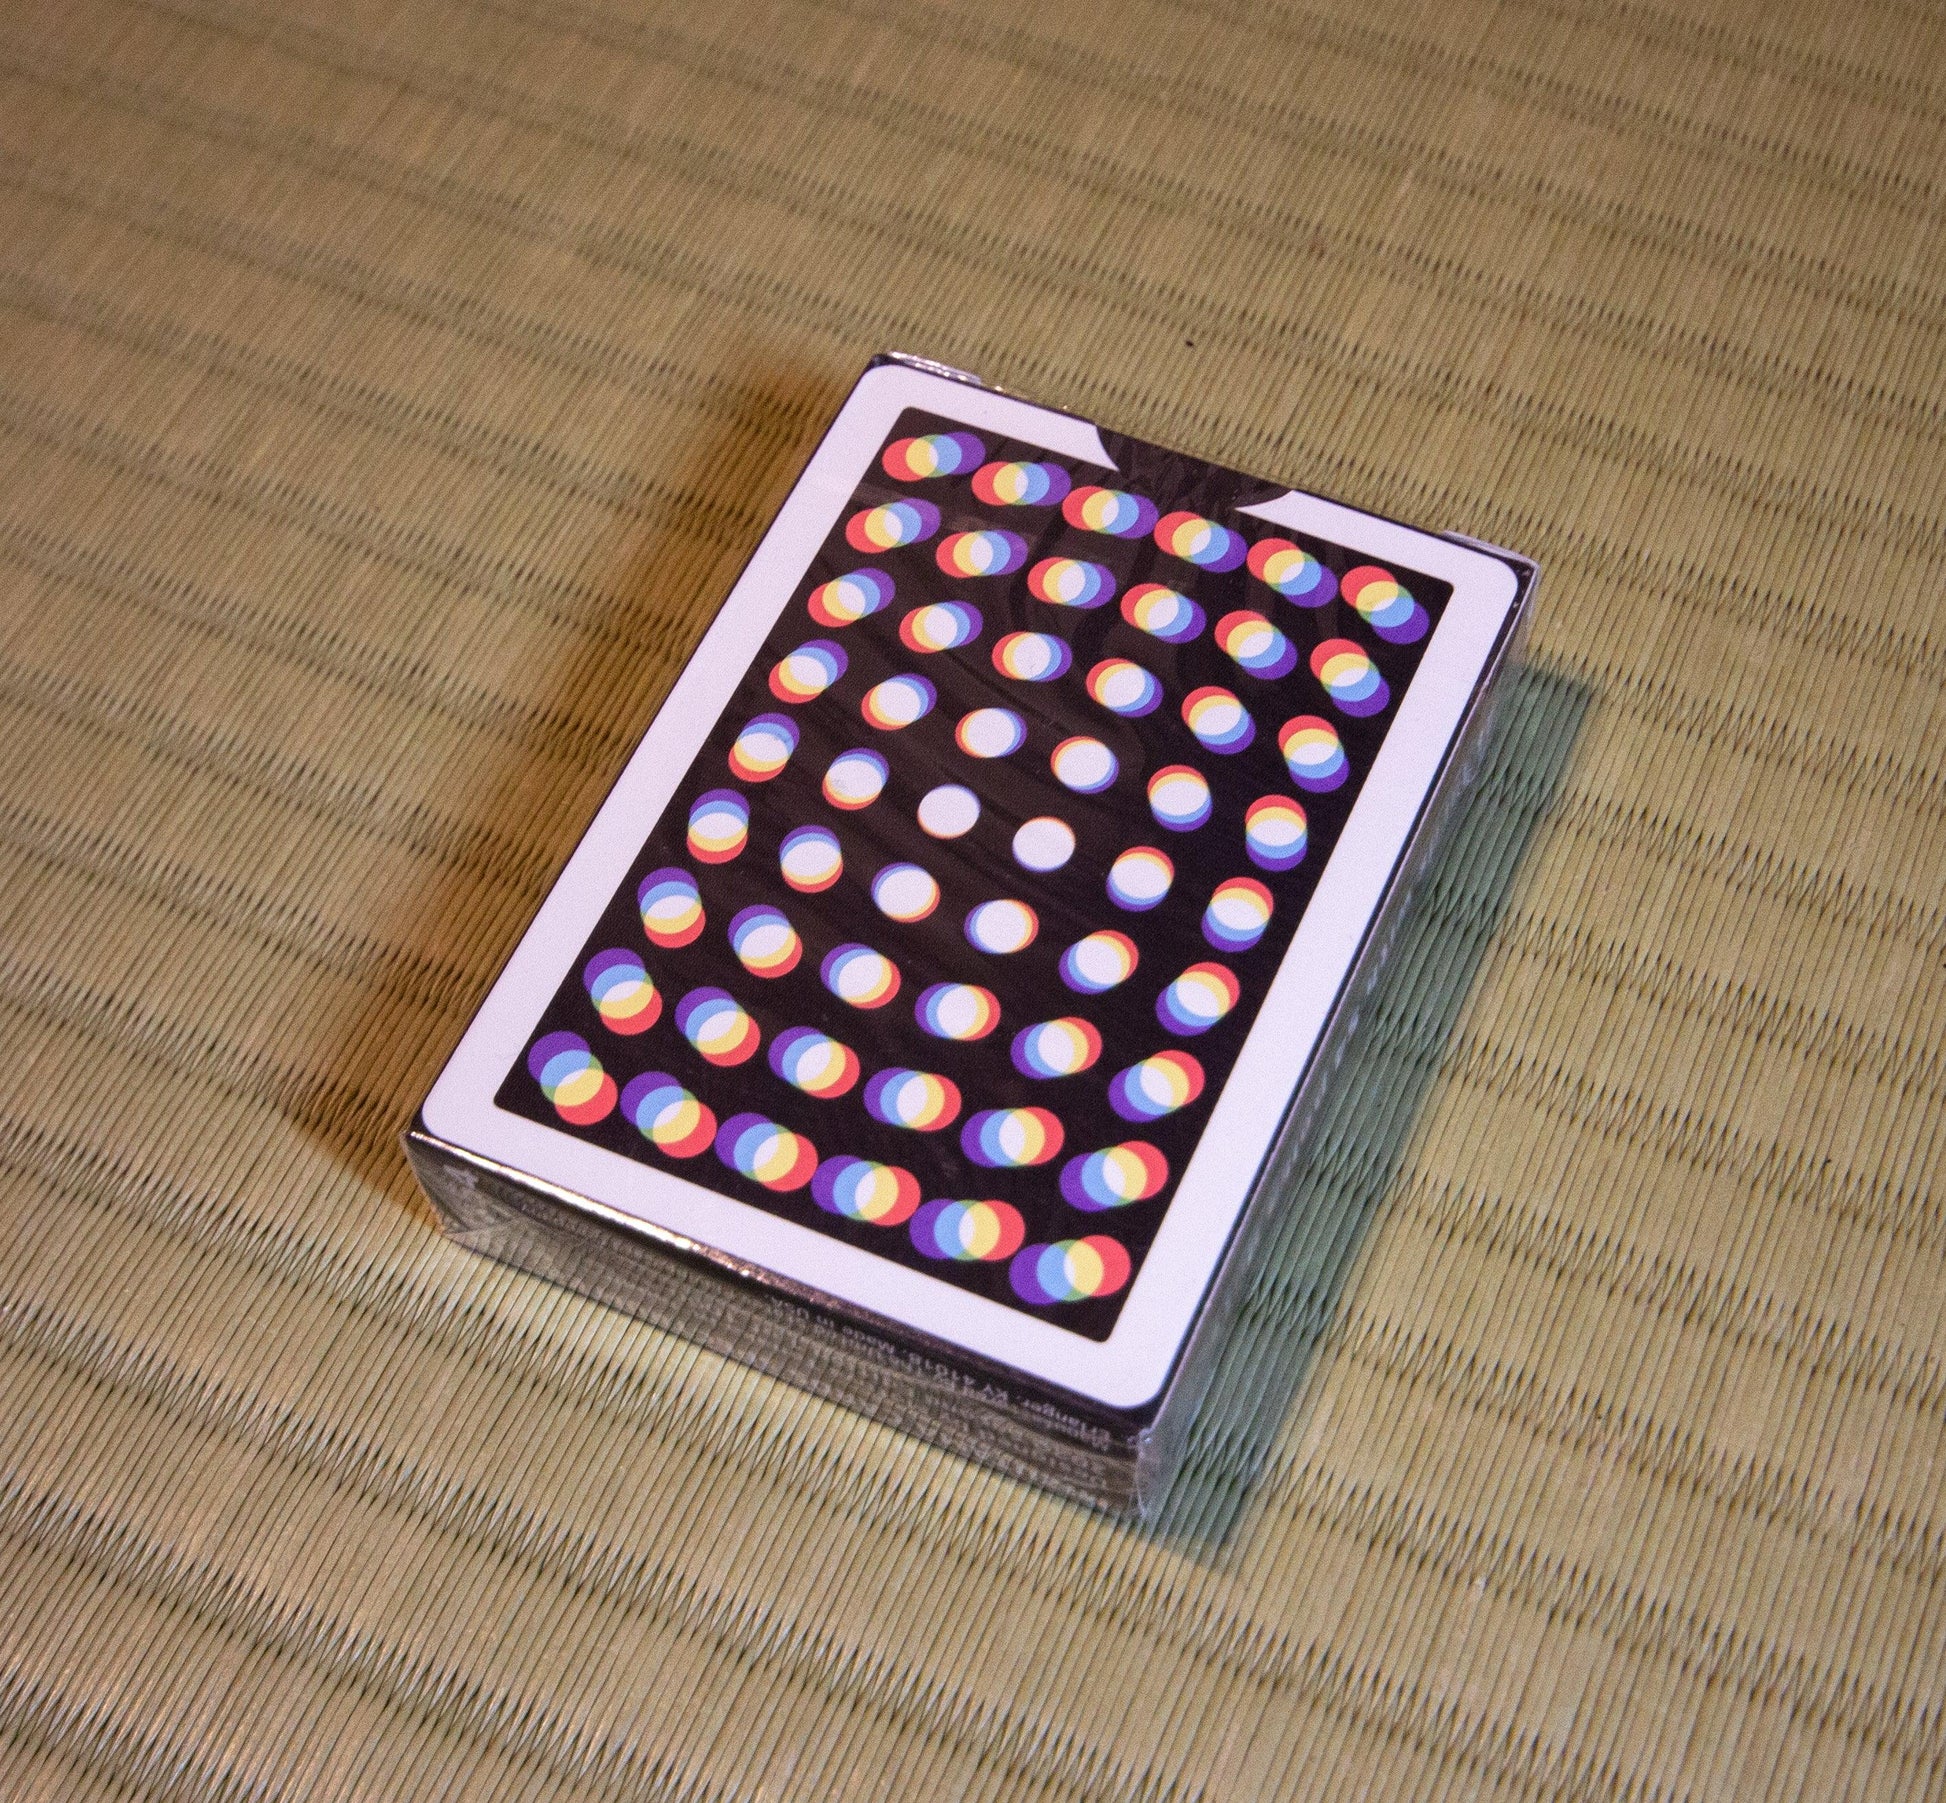 Mizutama Spectrum Playing Cards by Mizutama Playing Cards - Deckita Decks